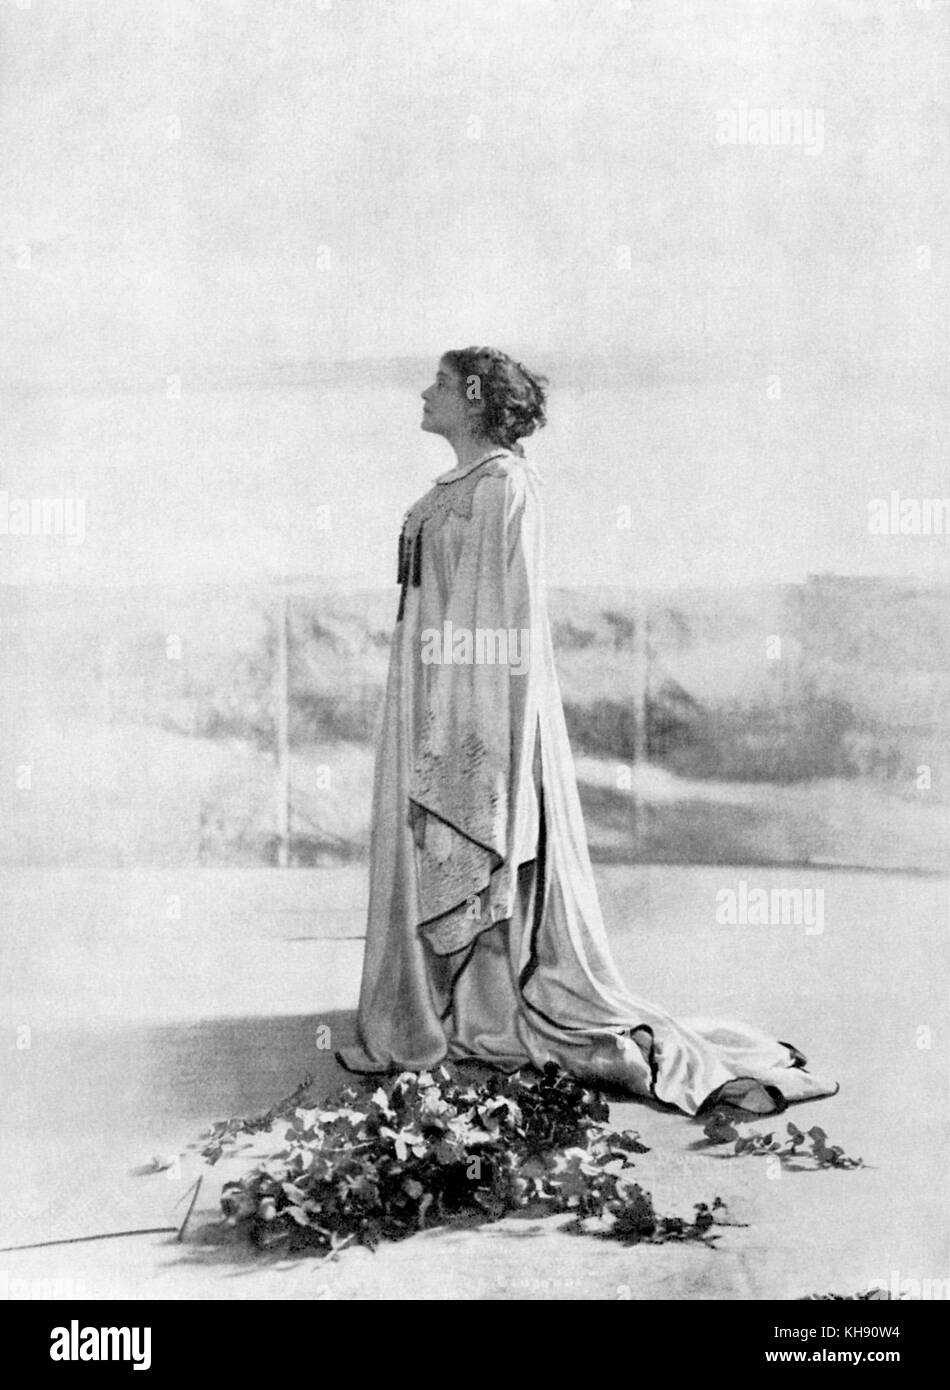 Eleonora Duse in La Gioconda - gioco da Gabriele d'Annunzio (1899). ED: attrice italiana, 1858-1924. GA: Italiano scrittore e drammaturgo, 12 marzo 1863 - 1 marzo 1938. Foto Stock